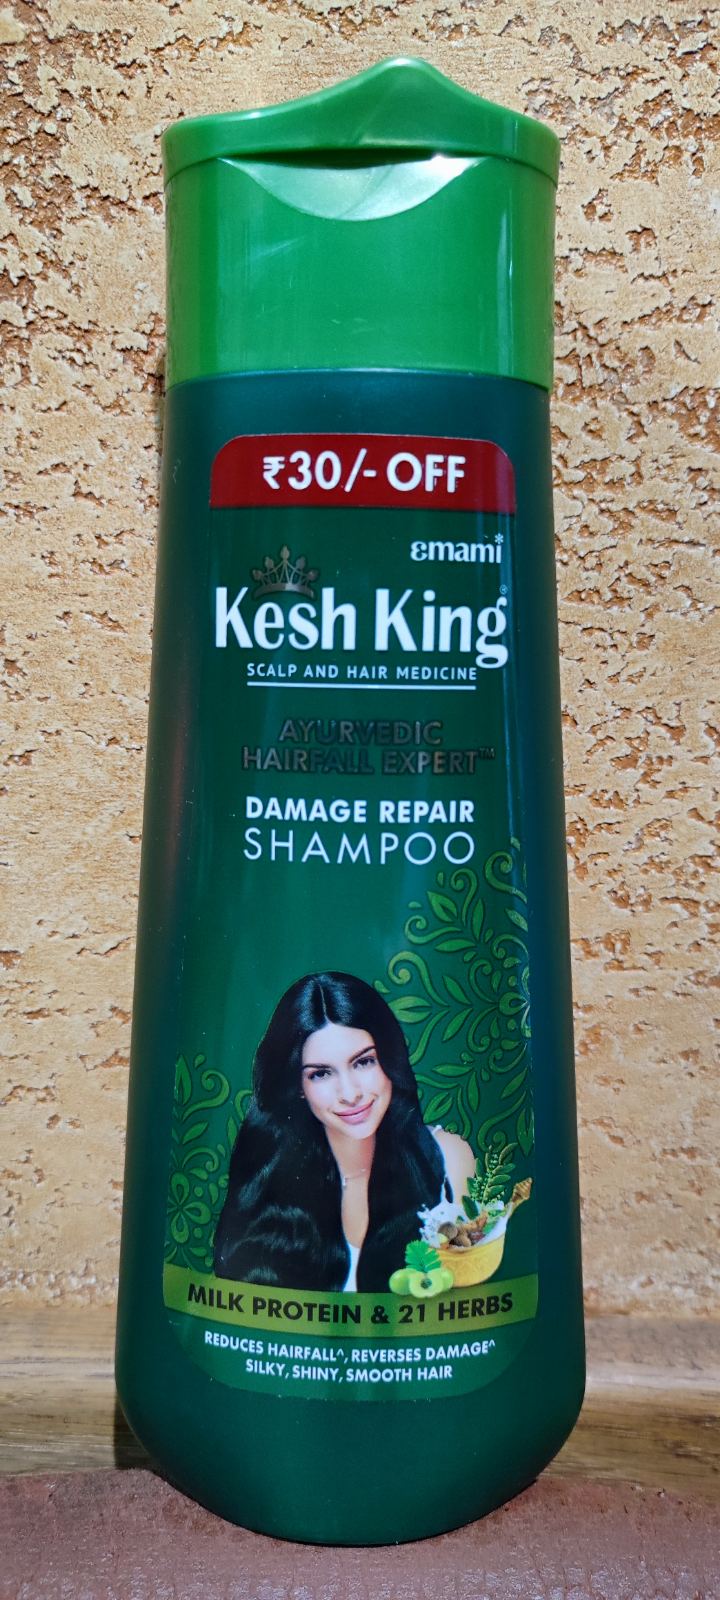 Кеш кинг шампунь Восстановление волос Emami Kesh king Damage Repair Shampoo Травяной оздоравливающий Индия 200мл